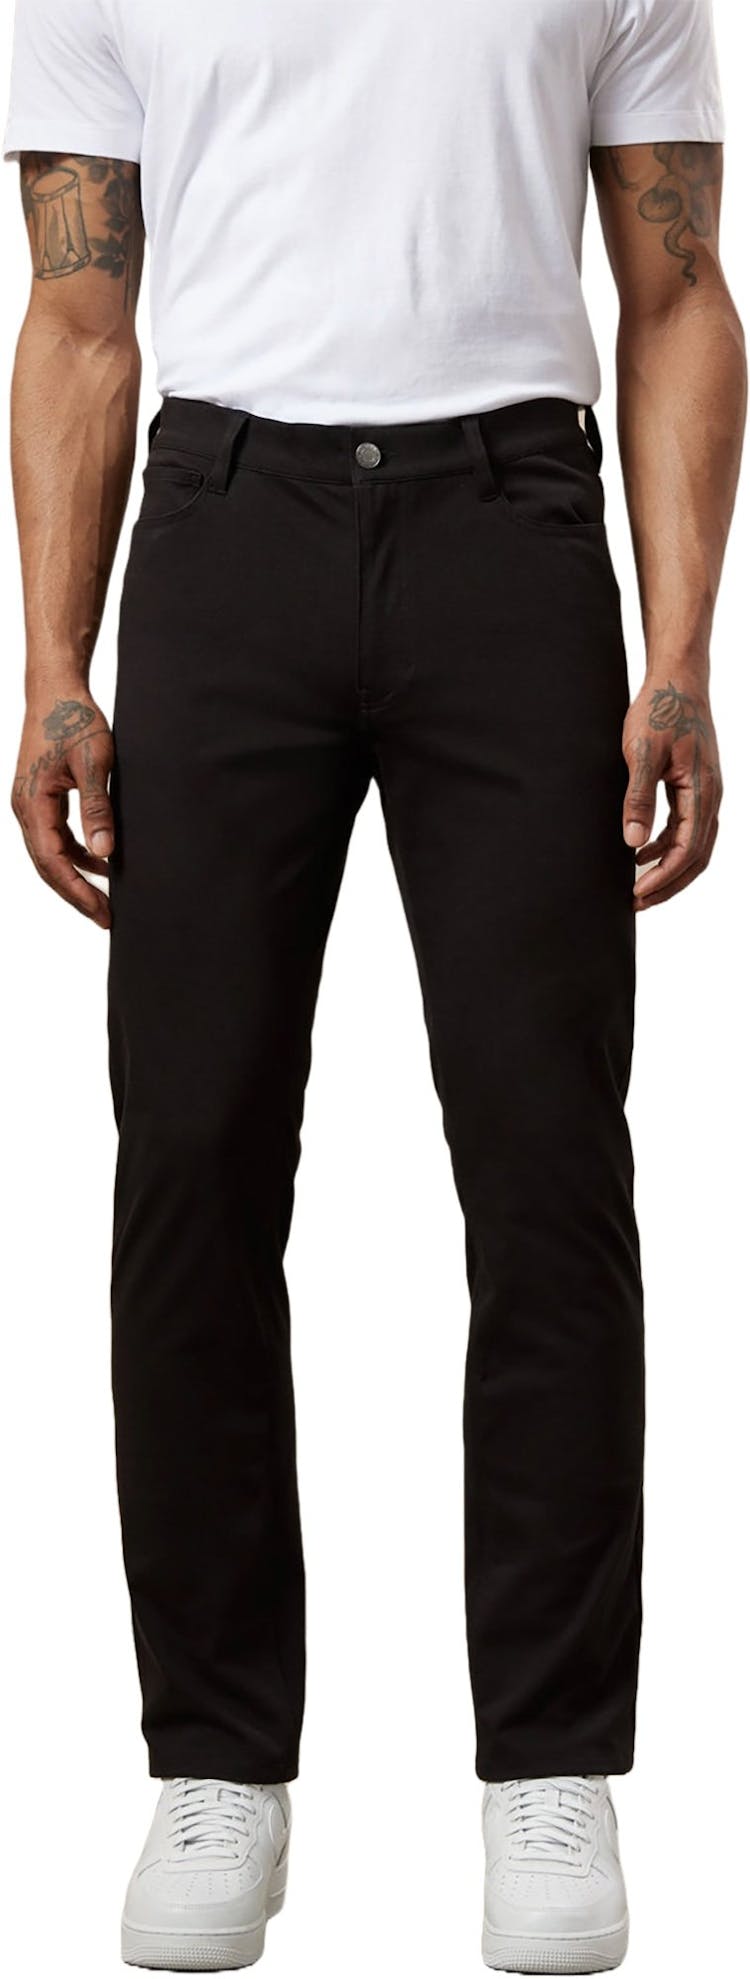 Numéro de l'image de la galerie de produits 3 pour le produit Pantalon coupe ajustée Flex - Homme